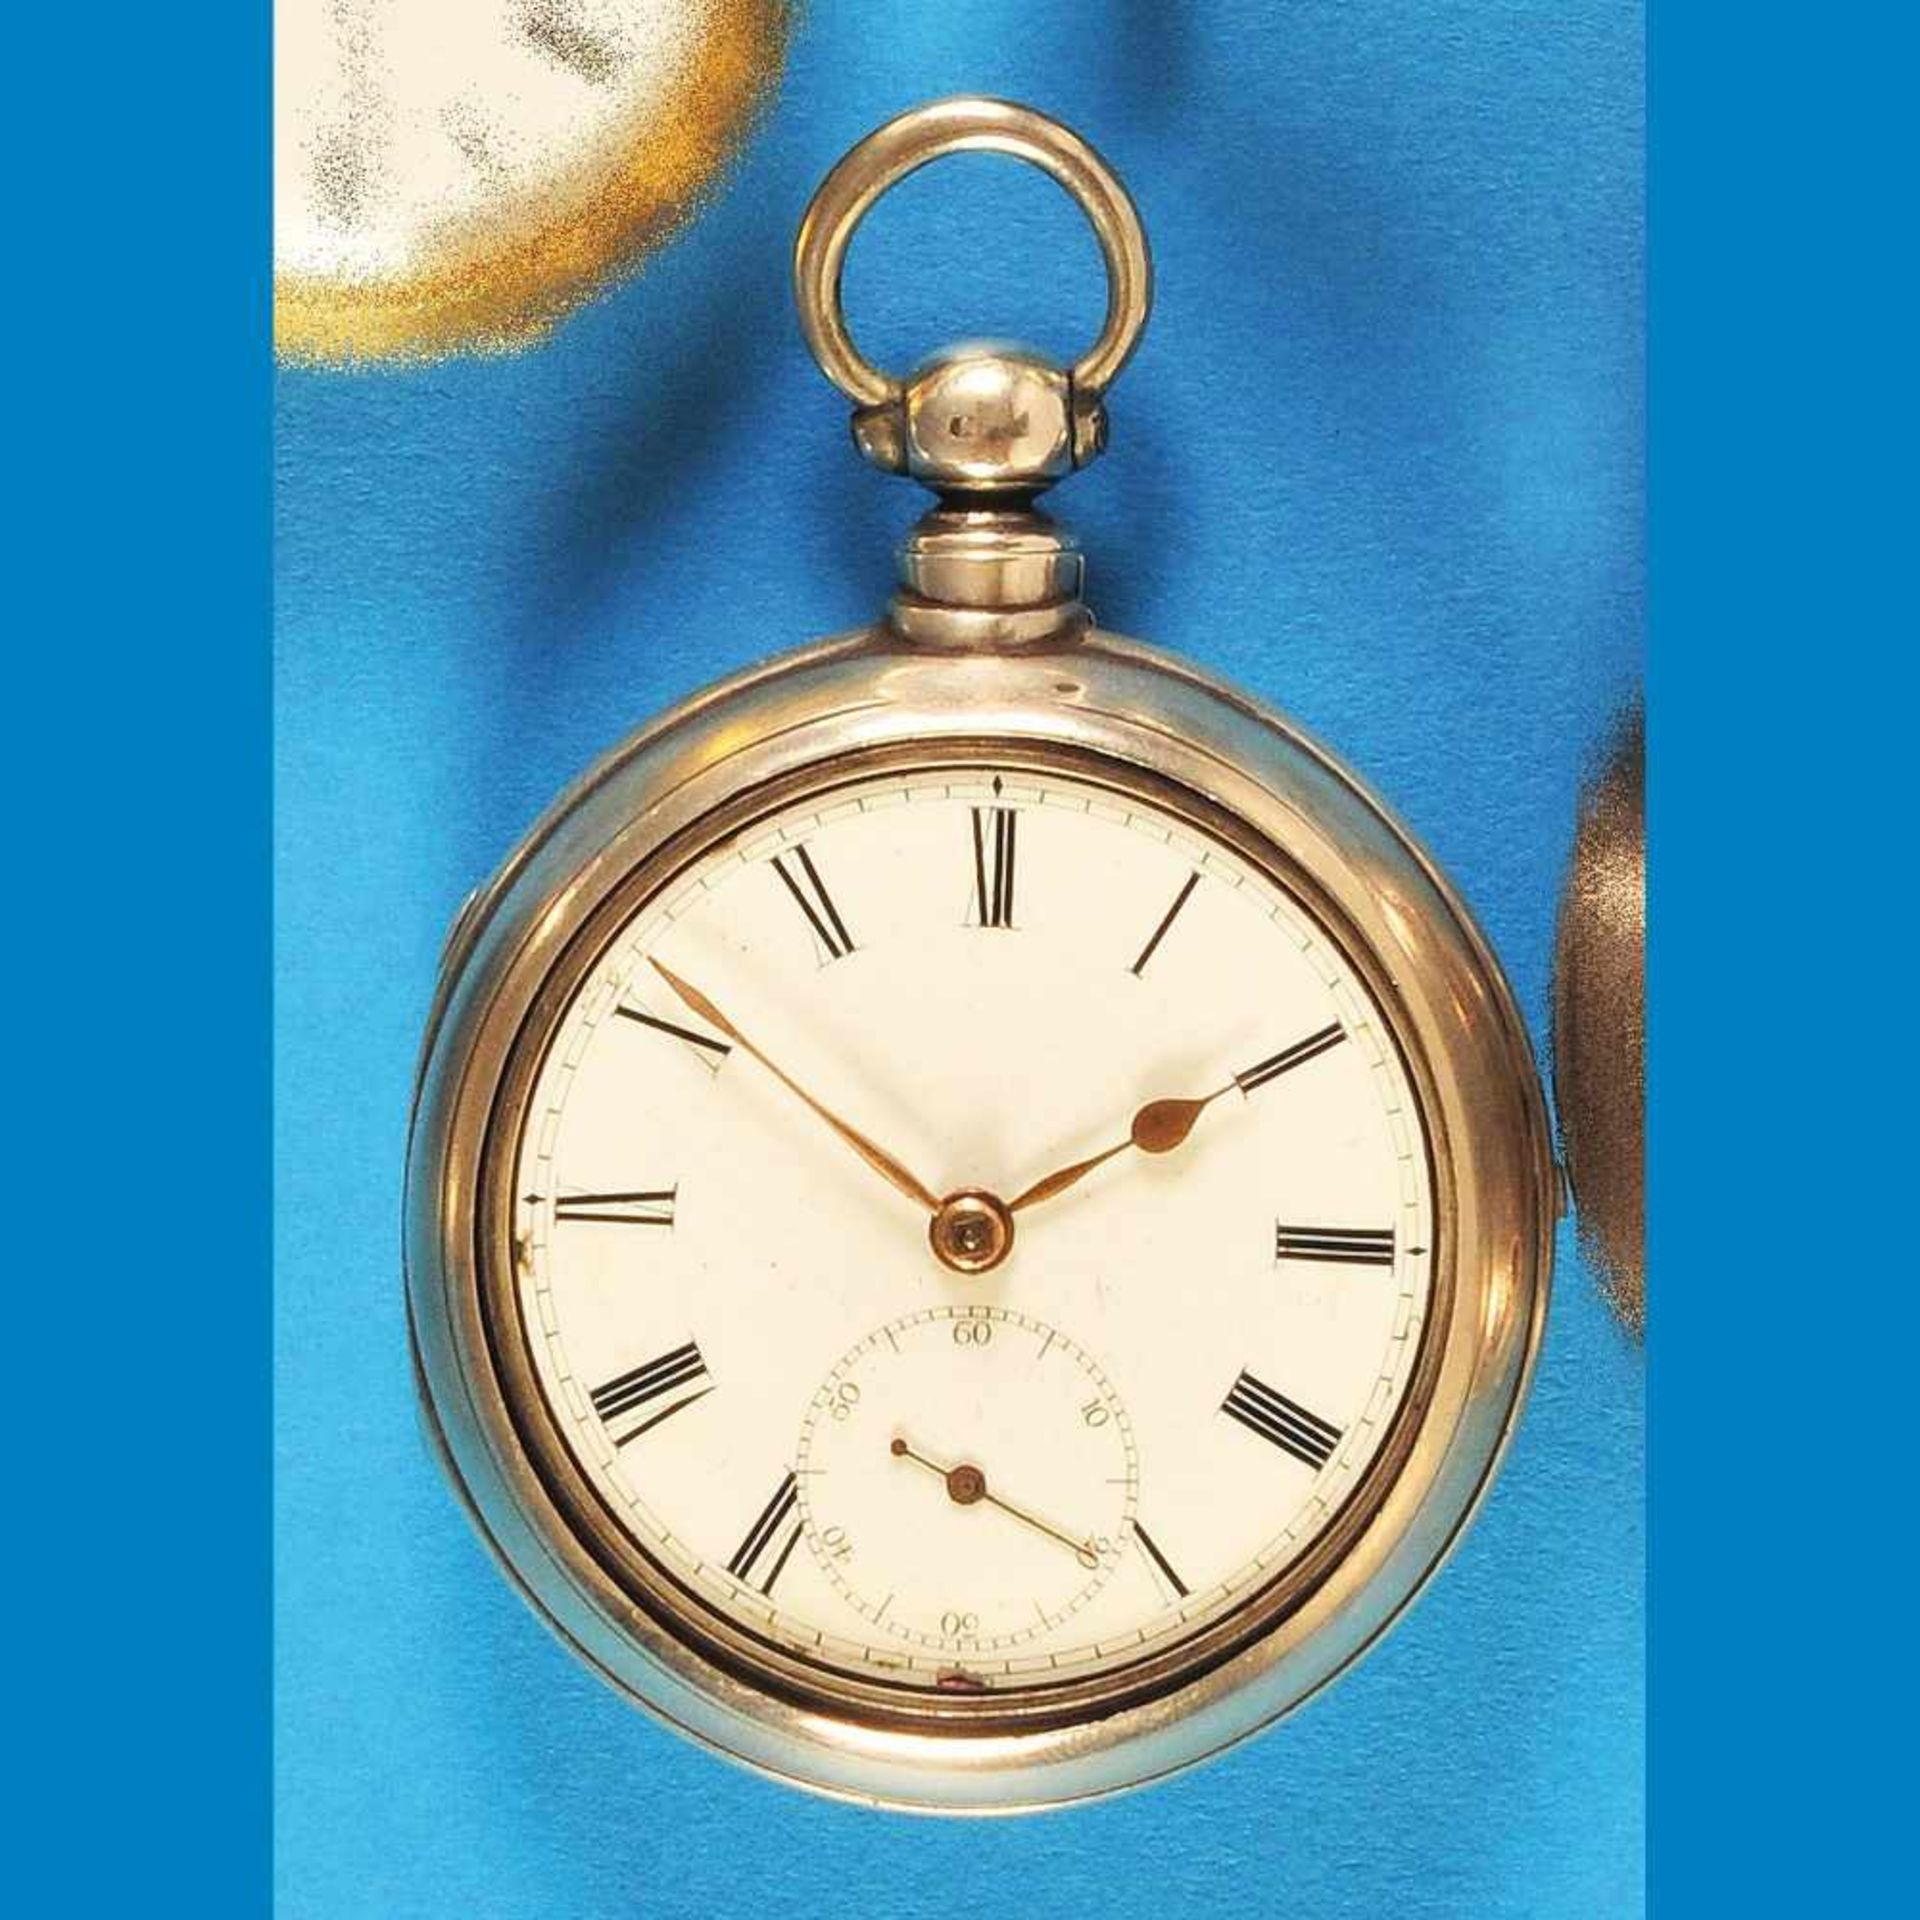 English silver pocket watch, on movement signed Alexander Simpson, FraserburghEnglische Sil - Bild 2 aus 2